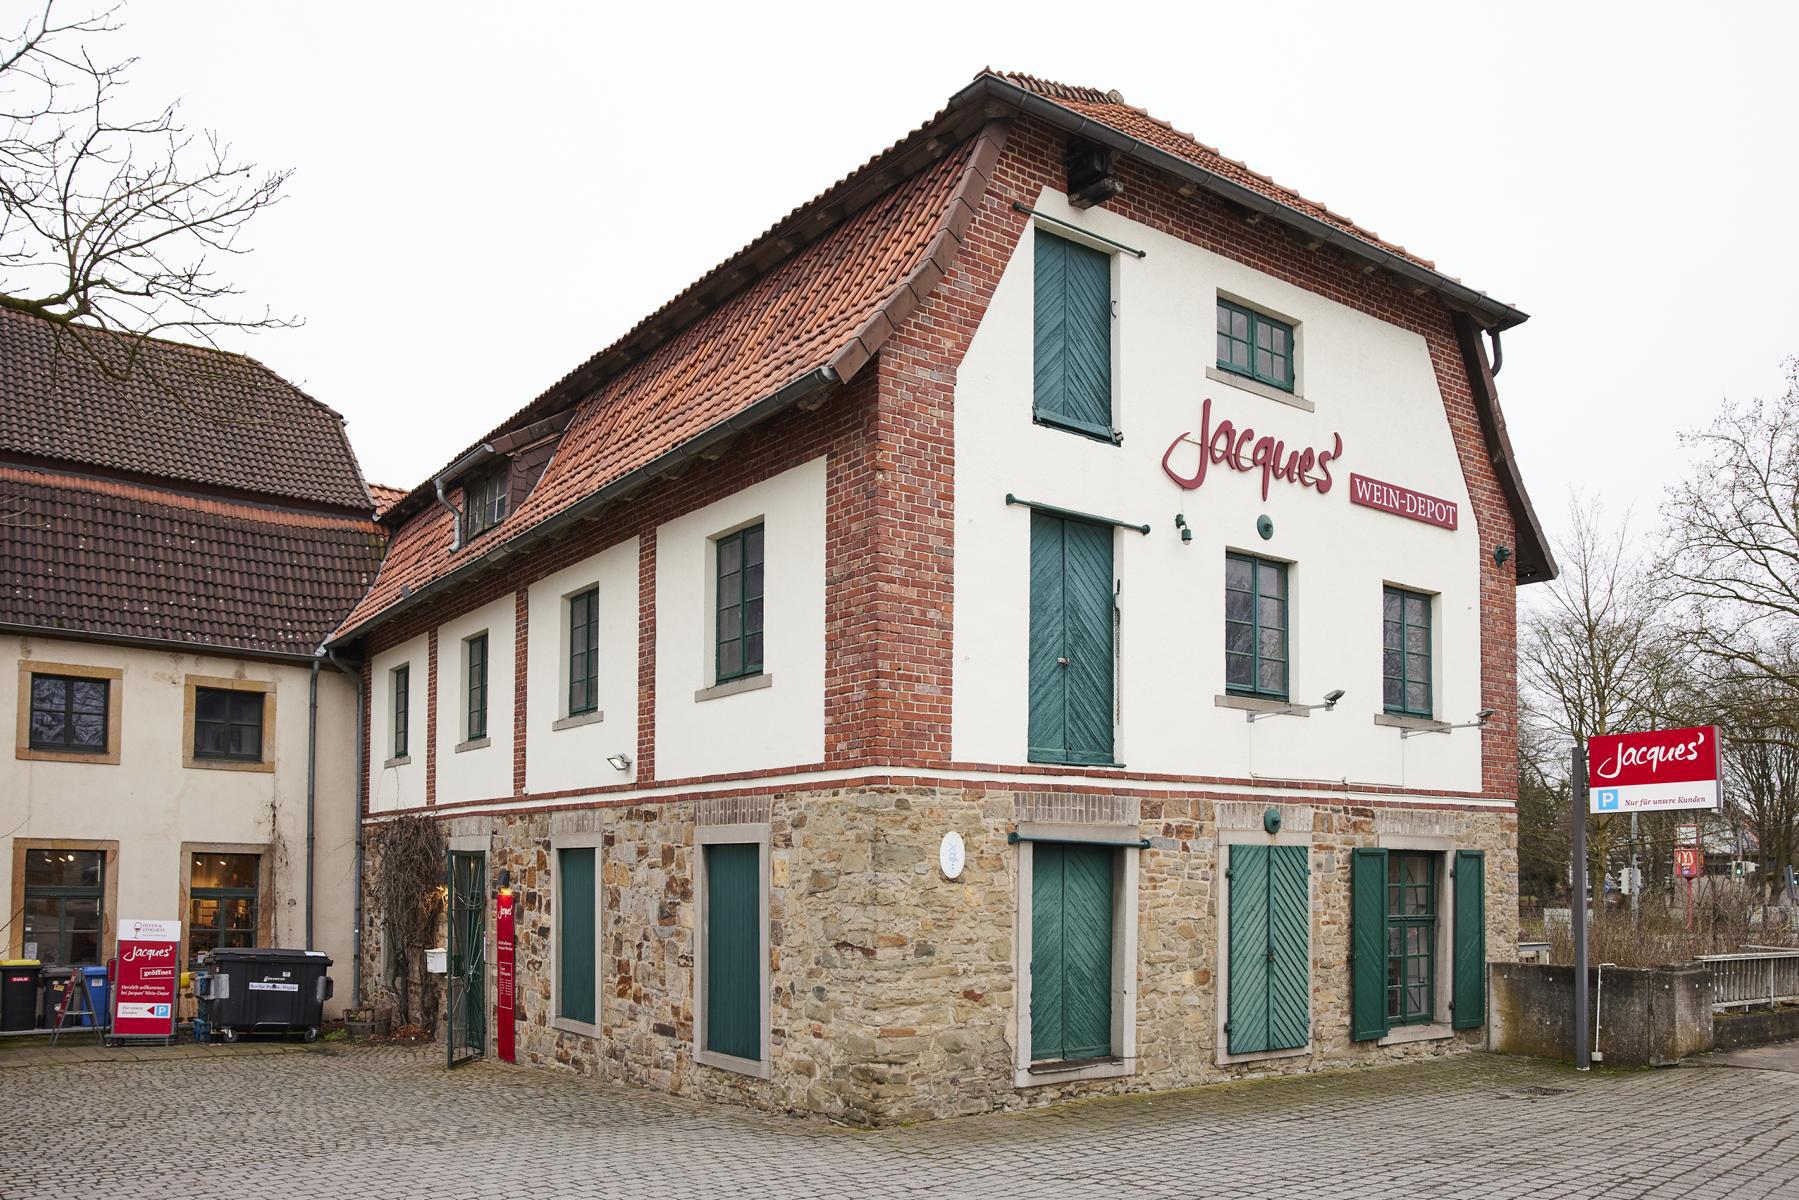 Bilder Jacques’ Wein-Depot Osnabrück-Haste